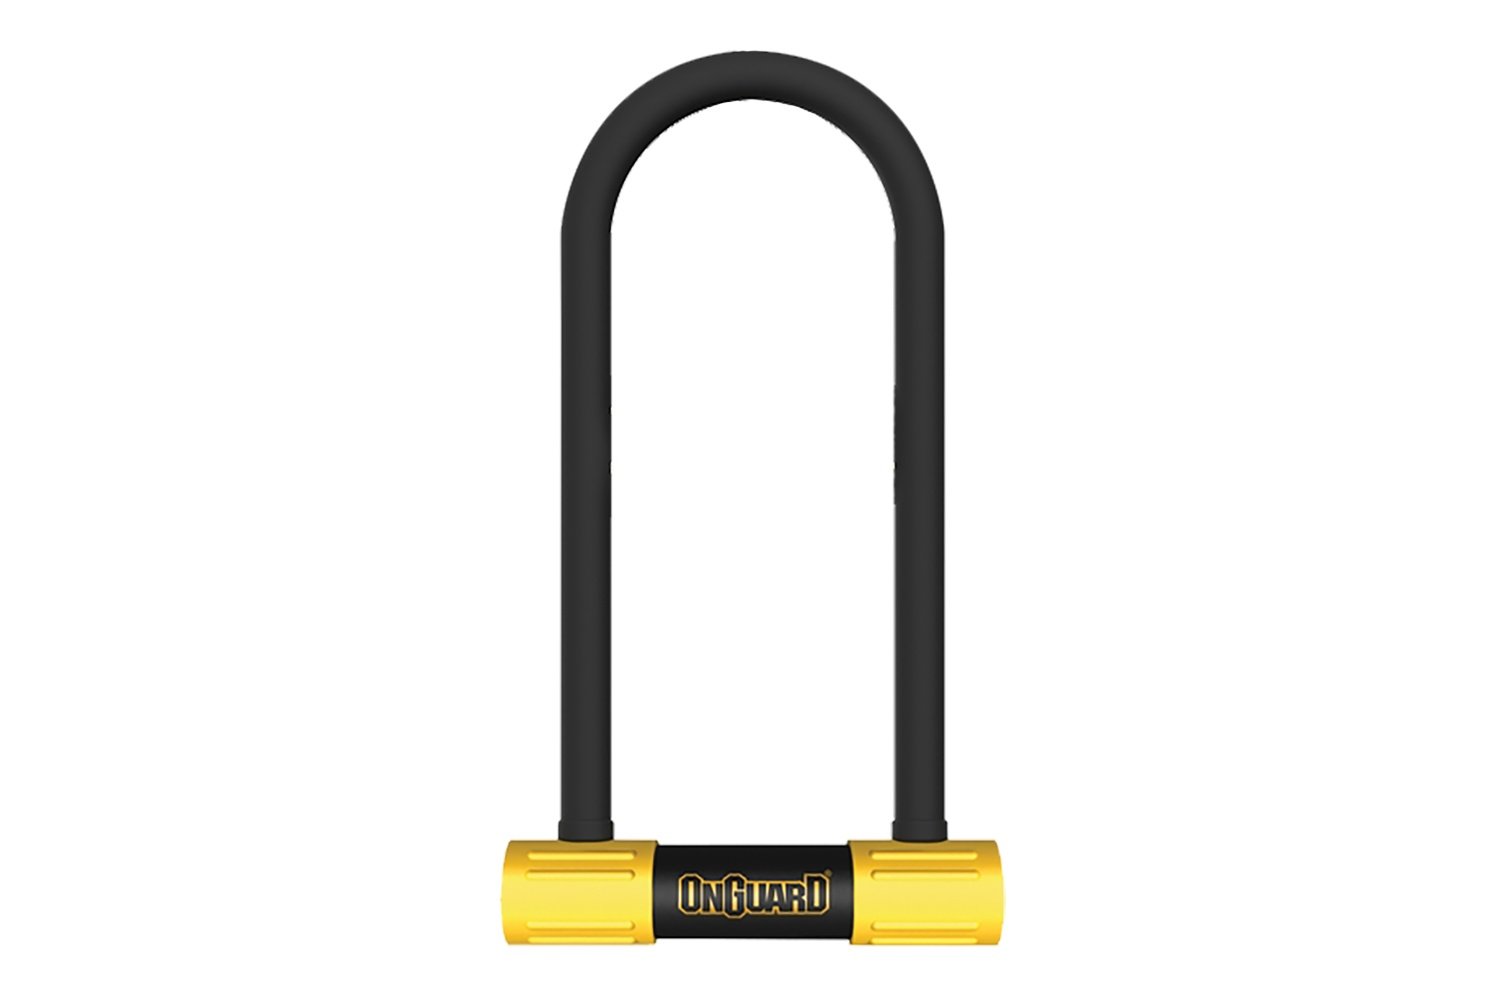 Велосипедный замок Onguard Smart Alarm, U-lock, на ключ, 100 x 258мм, 8268 велосипедный замок onguard bulldog combo dt u образный на ключ 115 x 230мм 8012c